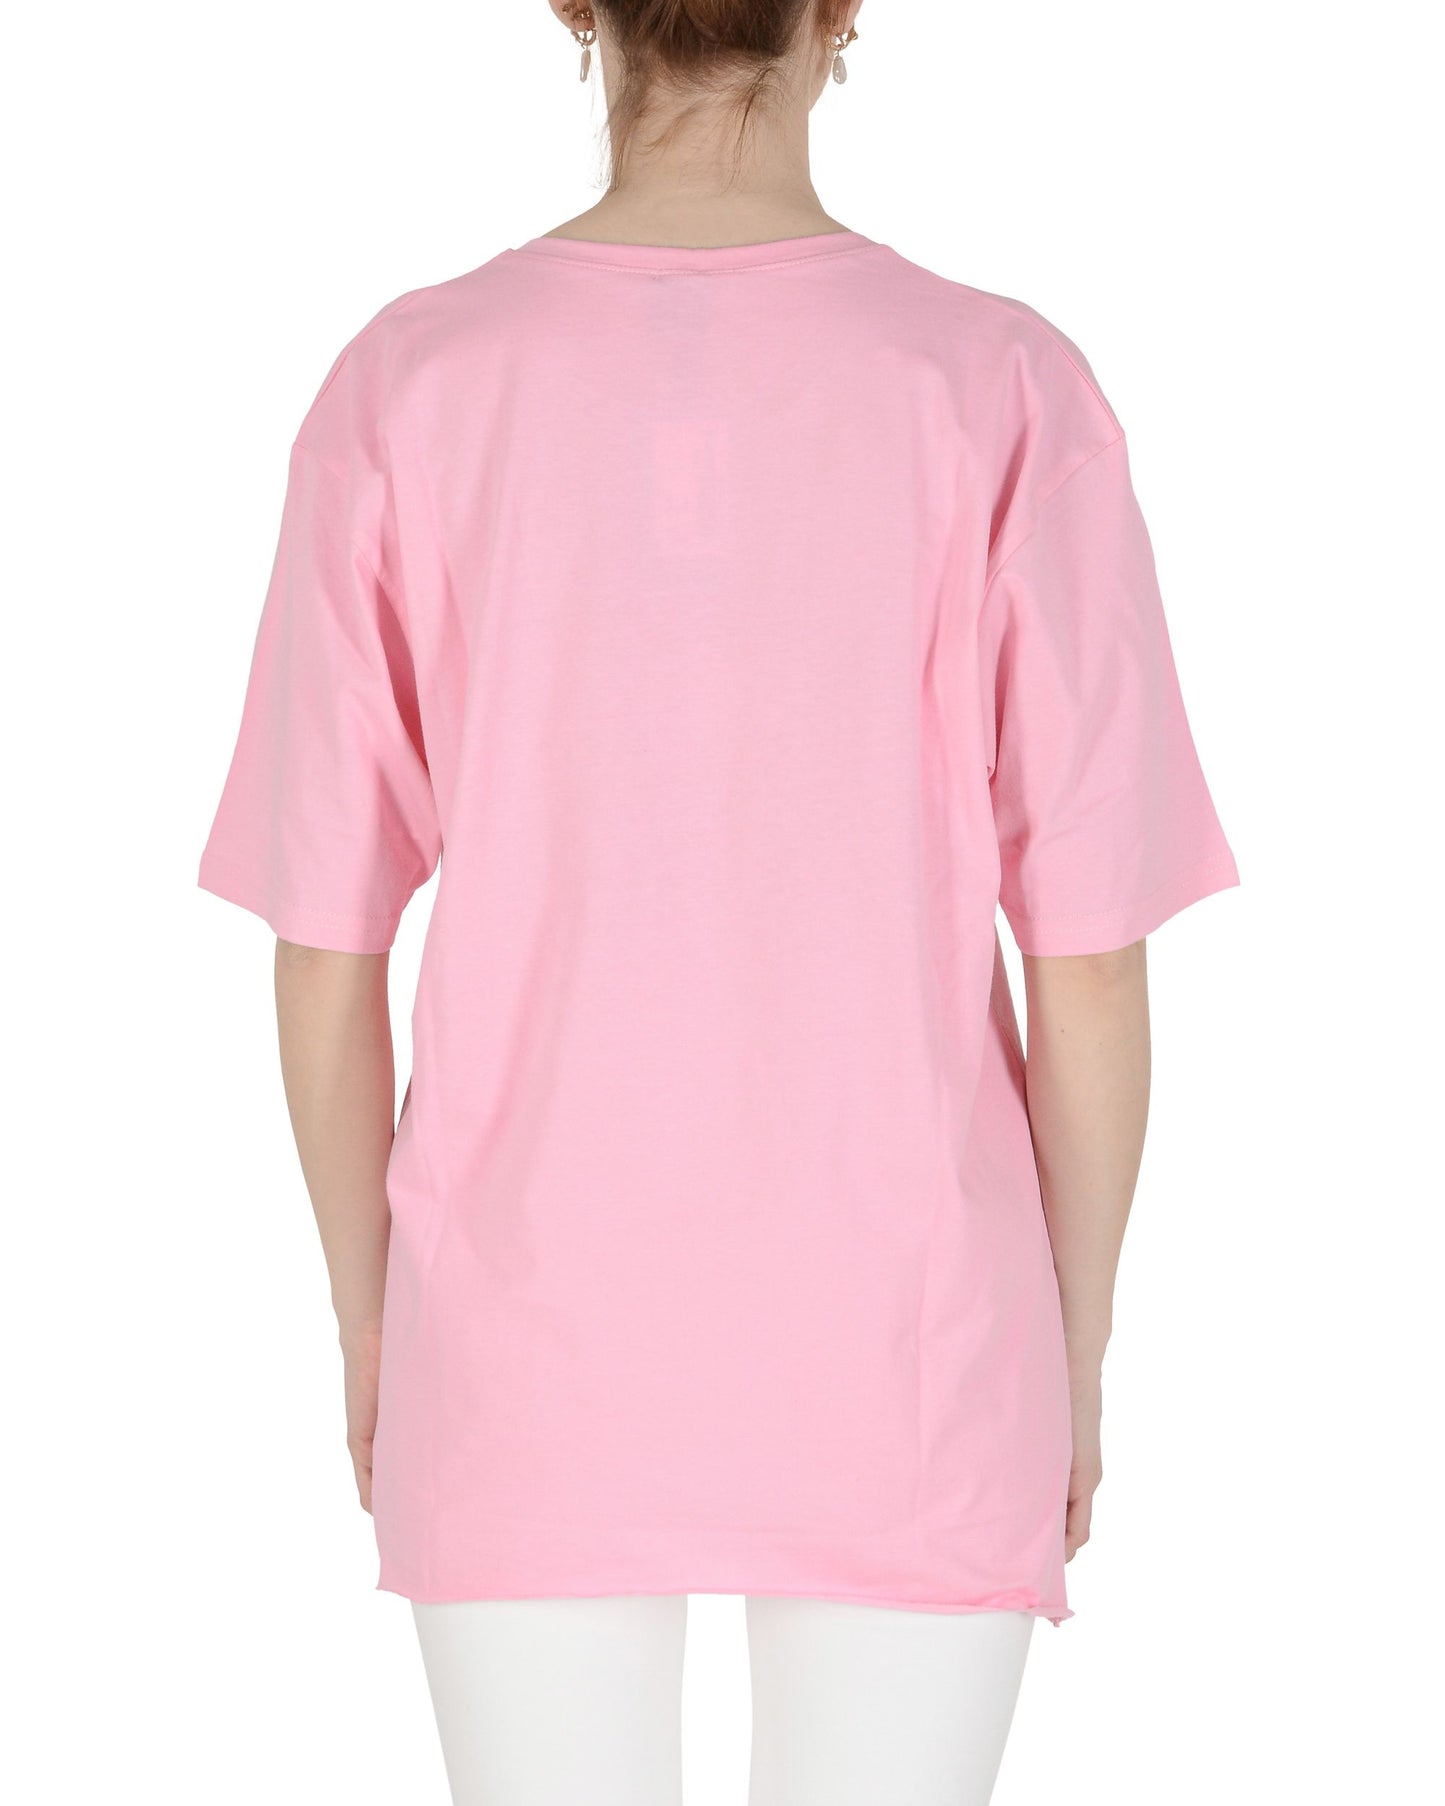 19V69 Italia T-Shirt Donna Rosa SMILE PINK